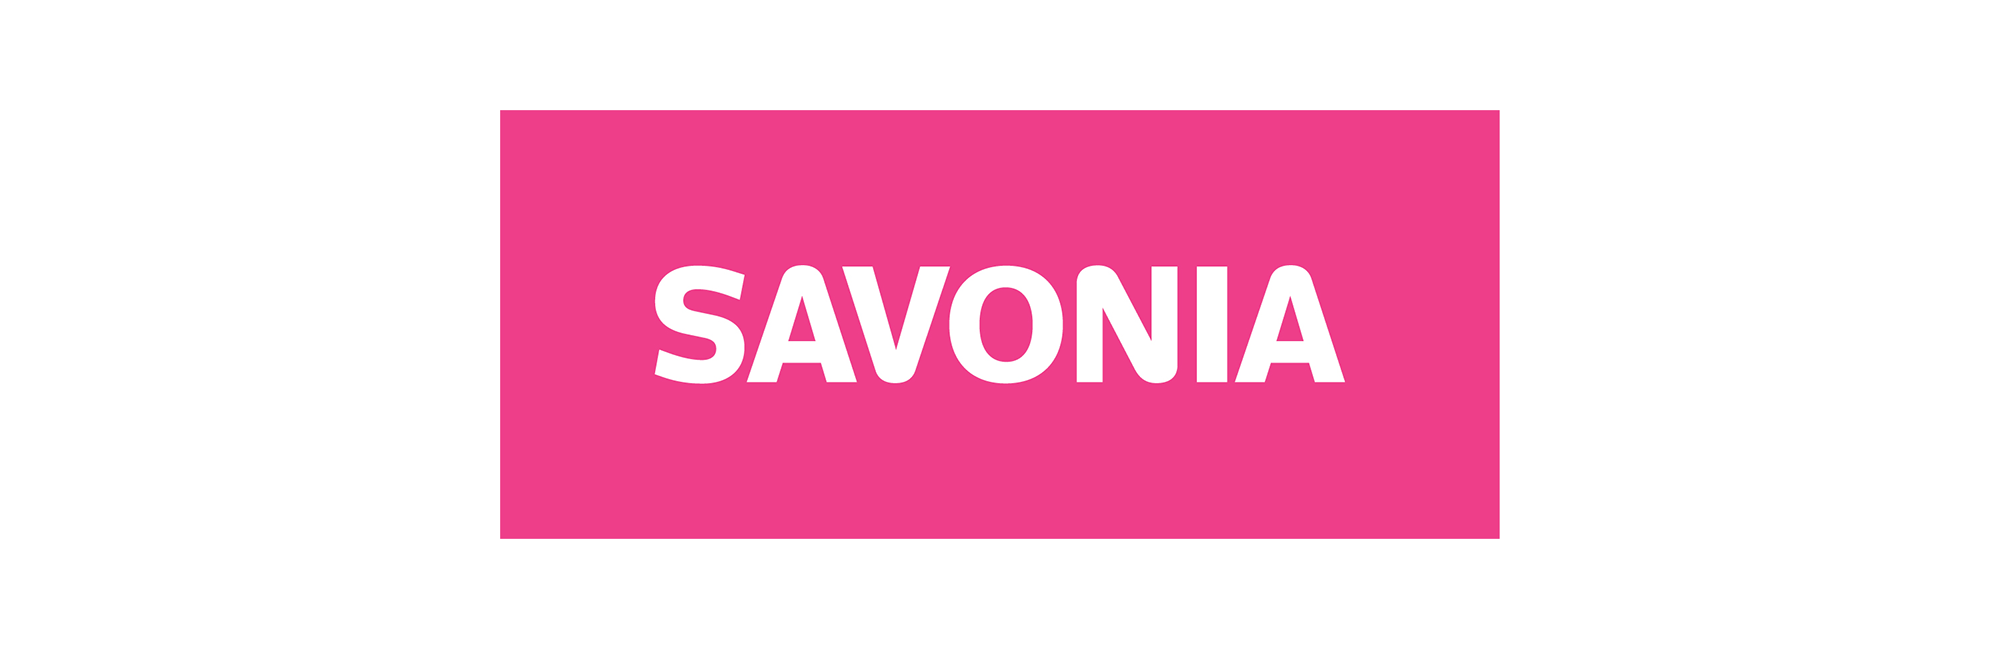 Savonia logo pinkki.